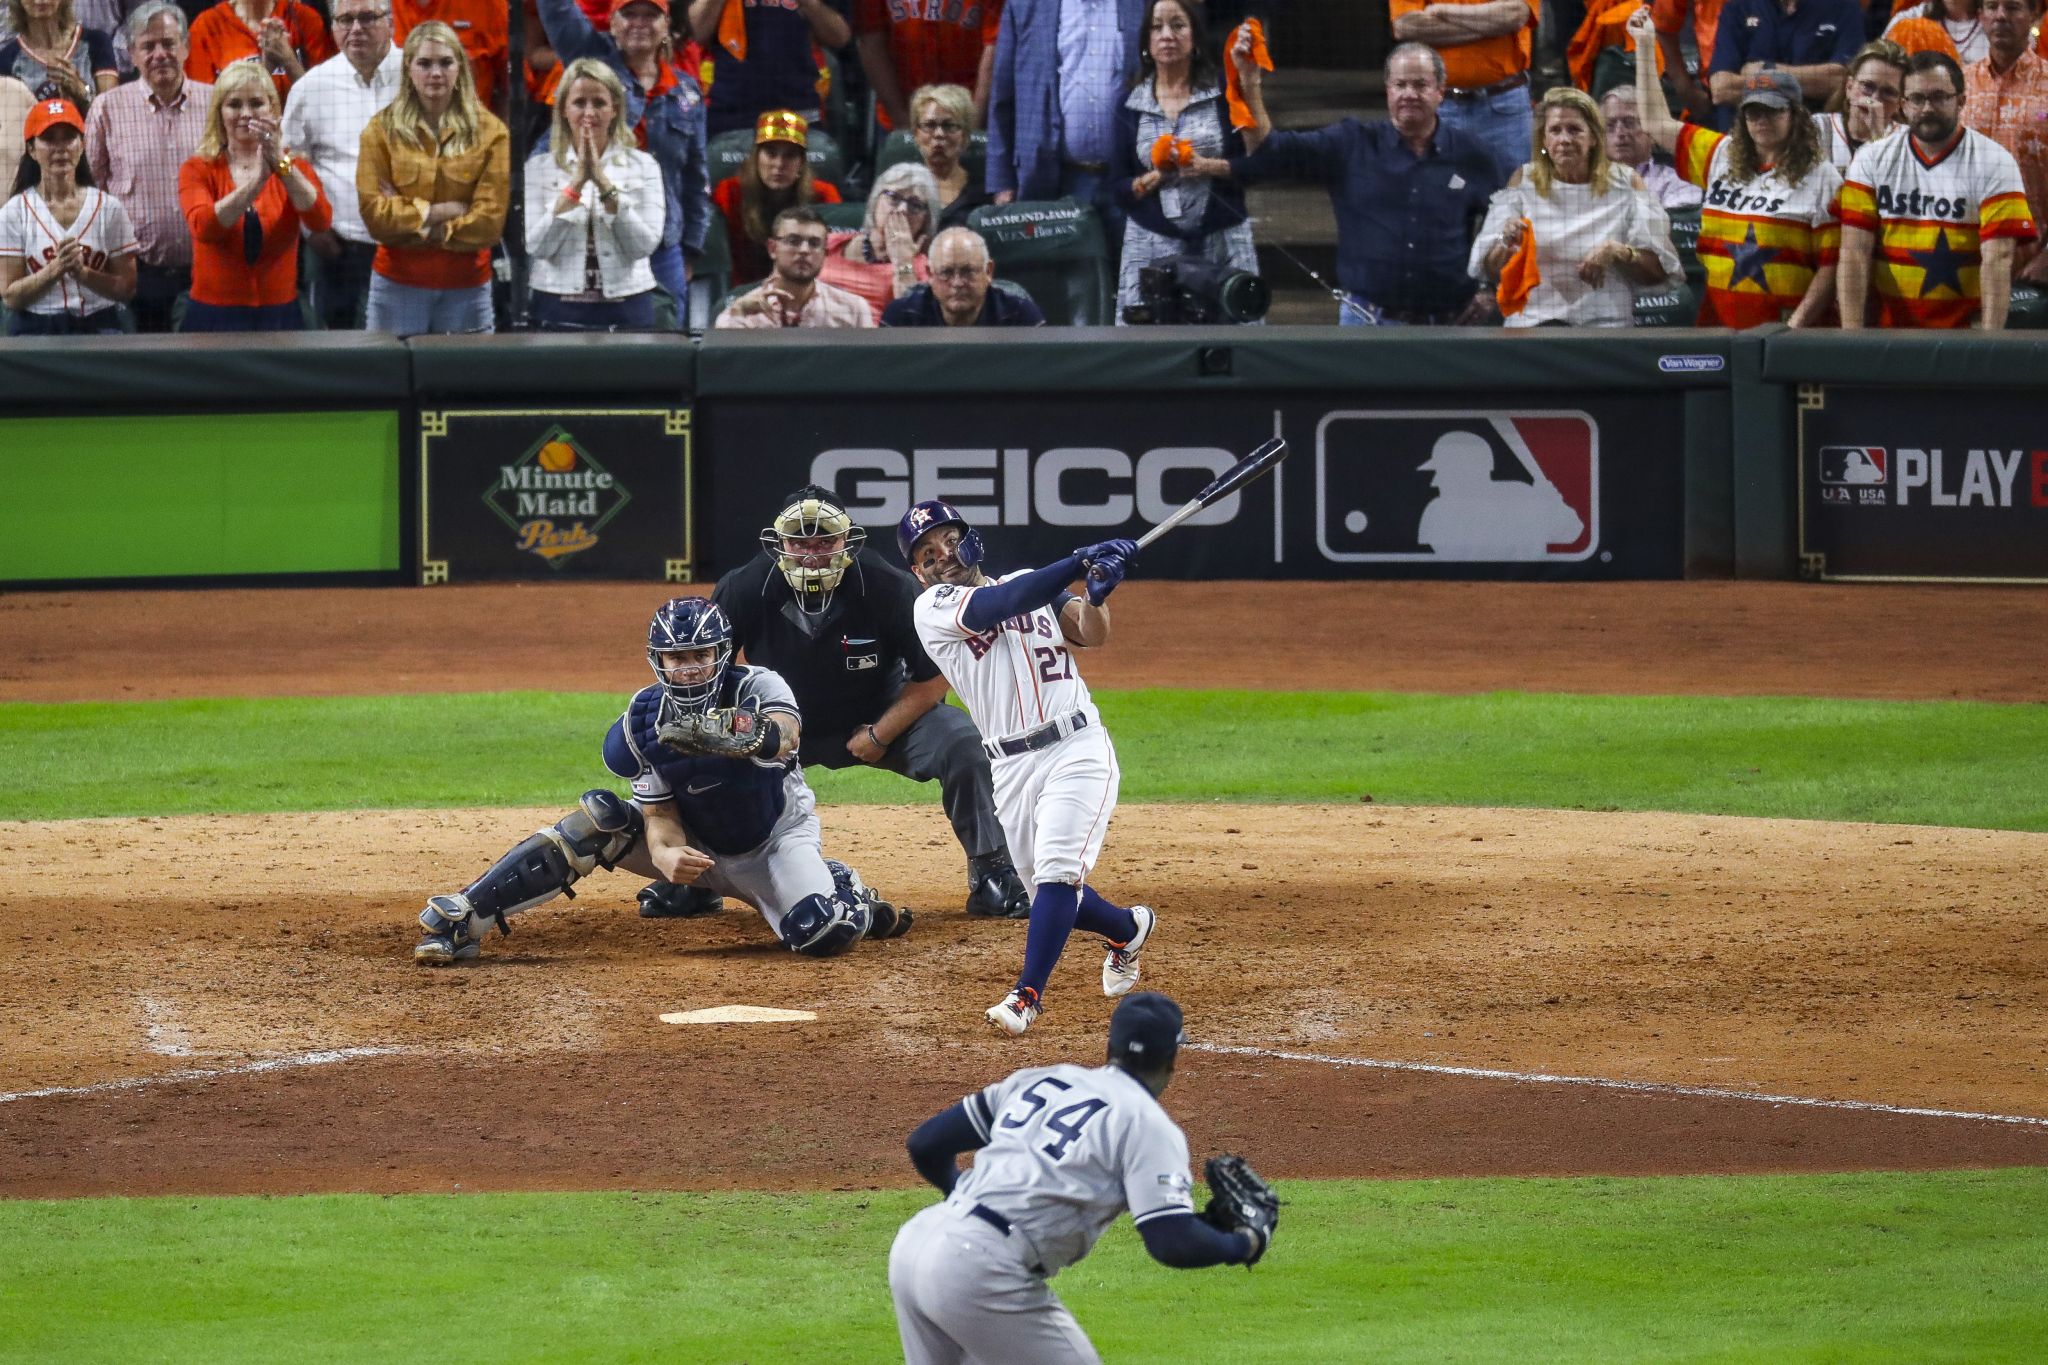 Jose Altuve's home run sends Astros into World Series - Los